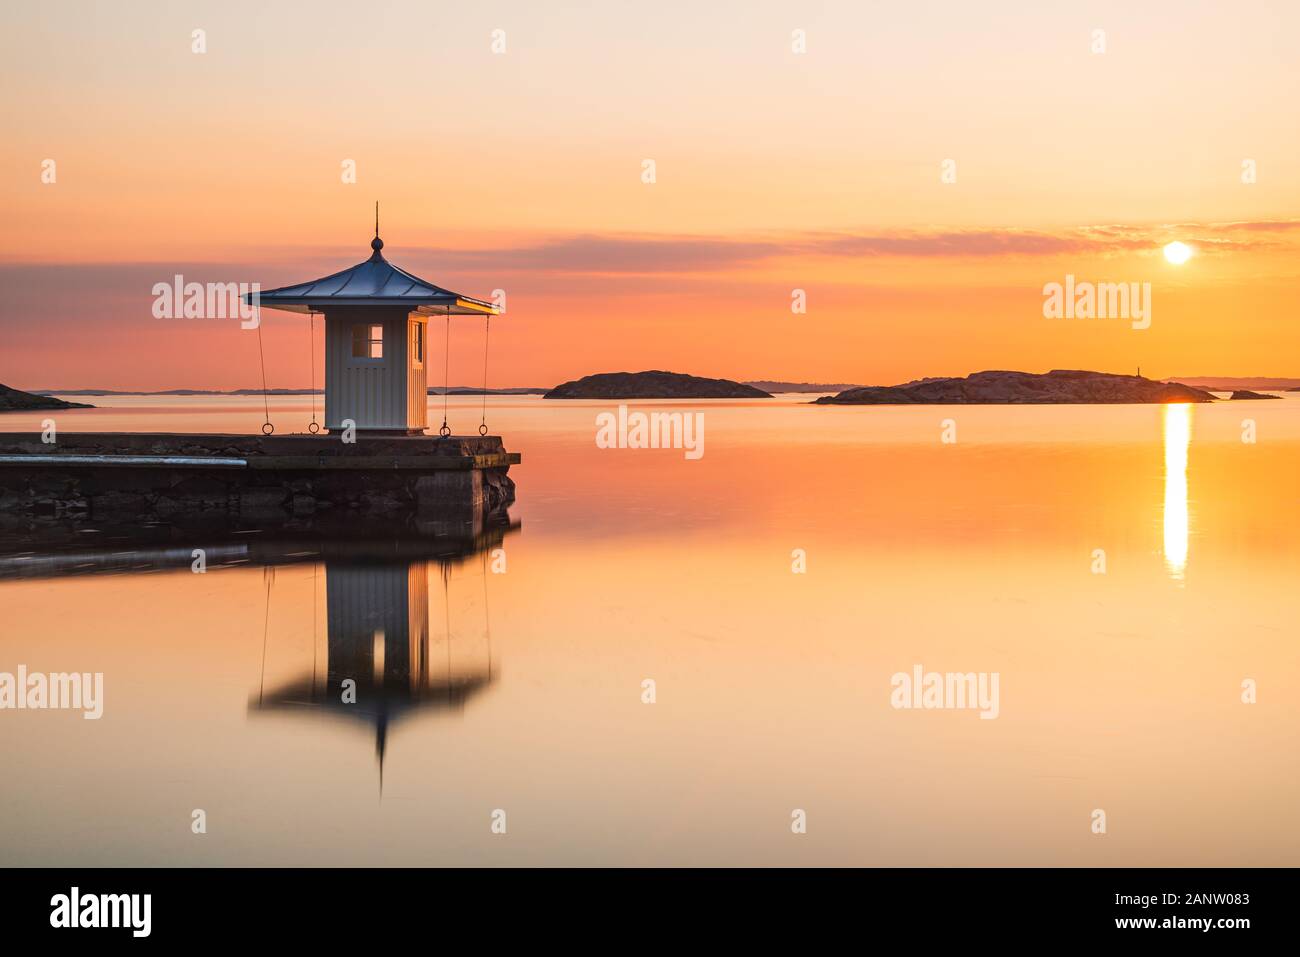 La riflessione del molo sul mare idilliaco durante il tramonto Foto Stock